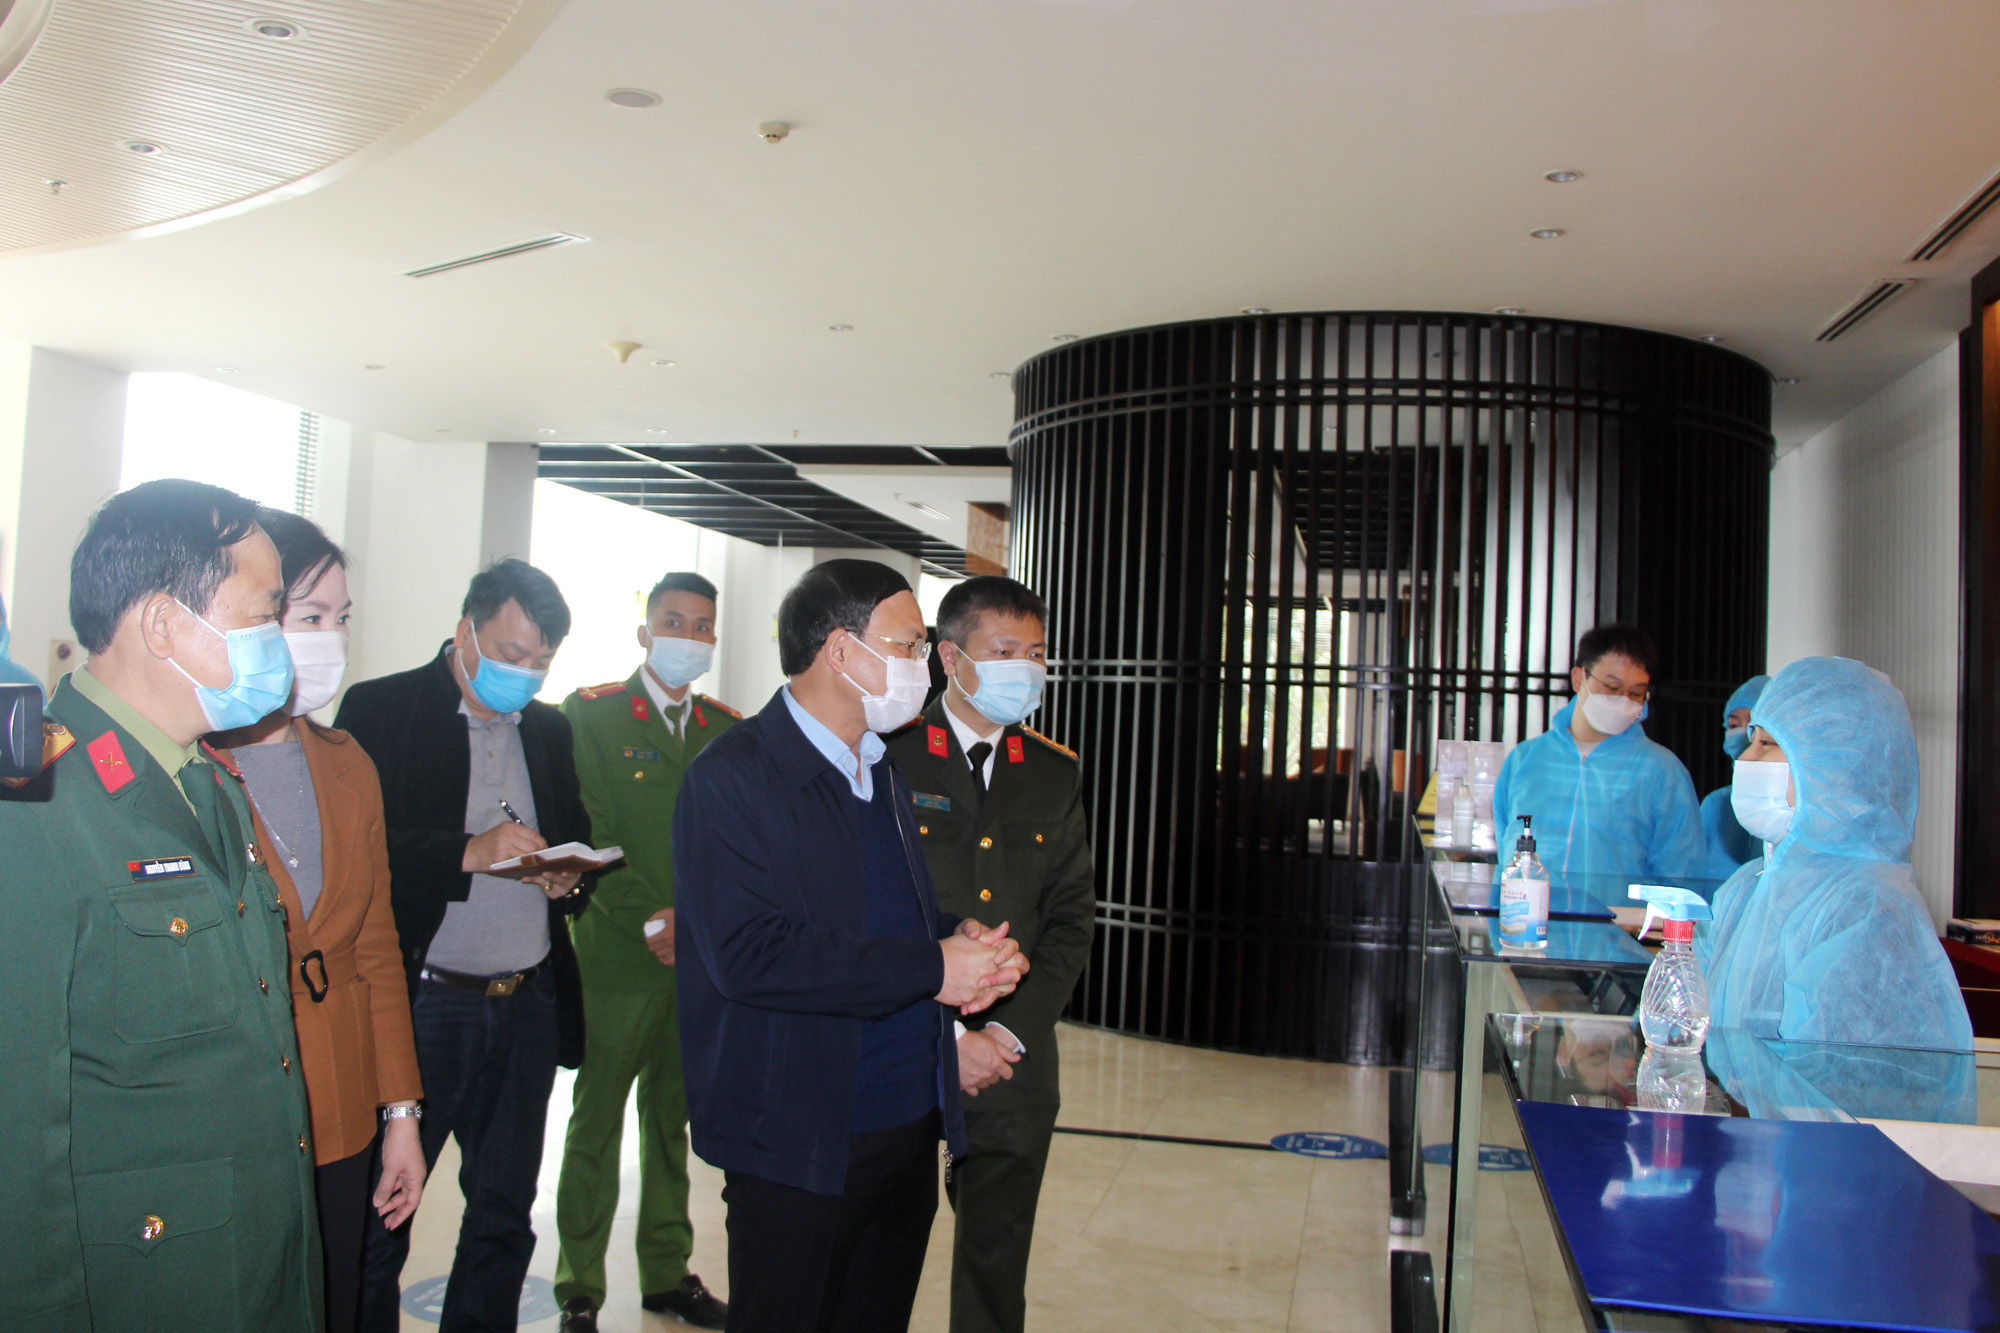 Đồng chí Nguyễn Xuân Ký, Bí thư Tỉnh ủy, Chủ tịch HĐND tỉnh, kiểm tra công tác phòng, chống dịch Covid-19 tại Khách sạn Novotel Hạ Long.